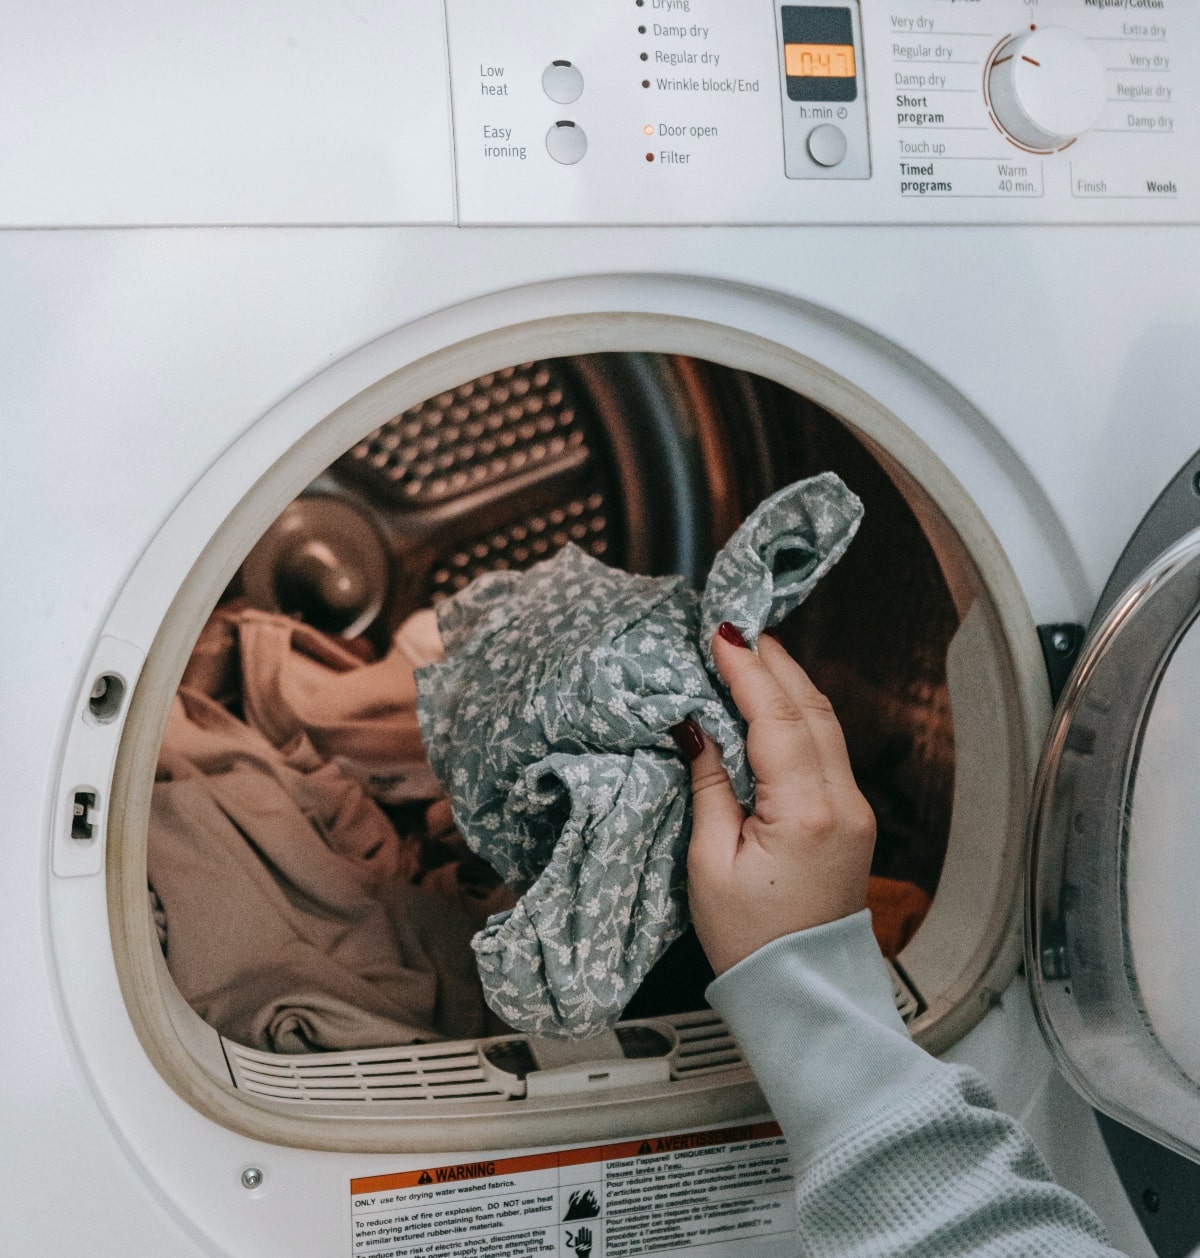 Consejos para en lavado de ropa | Consumer